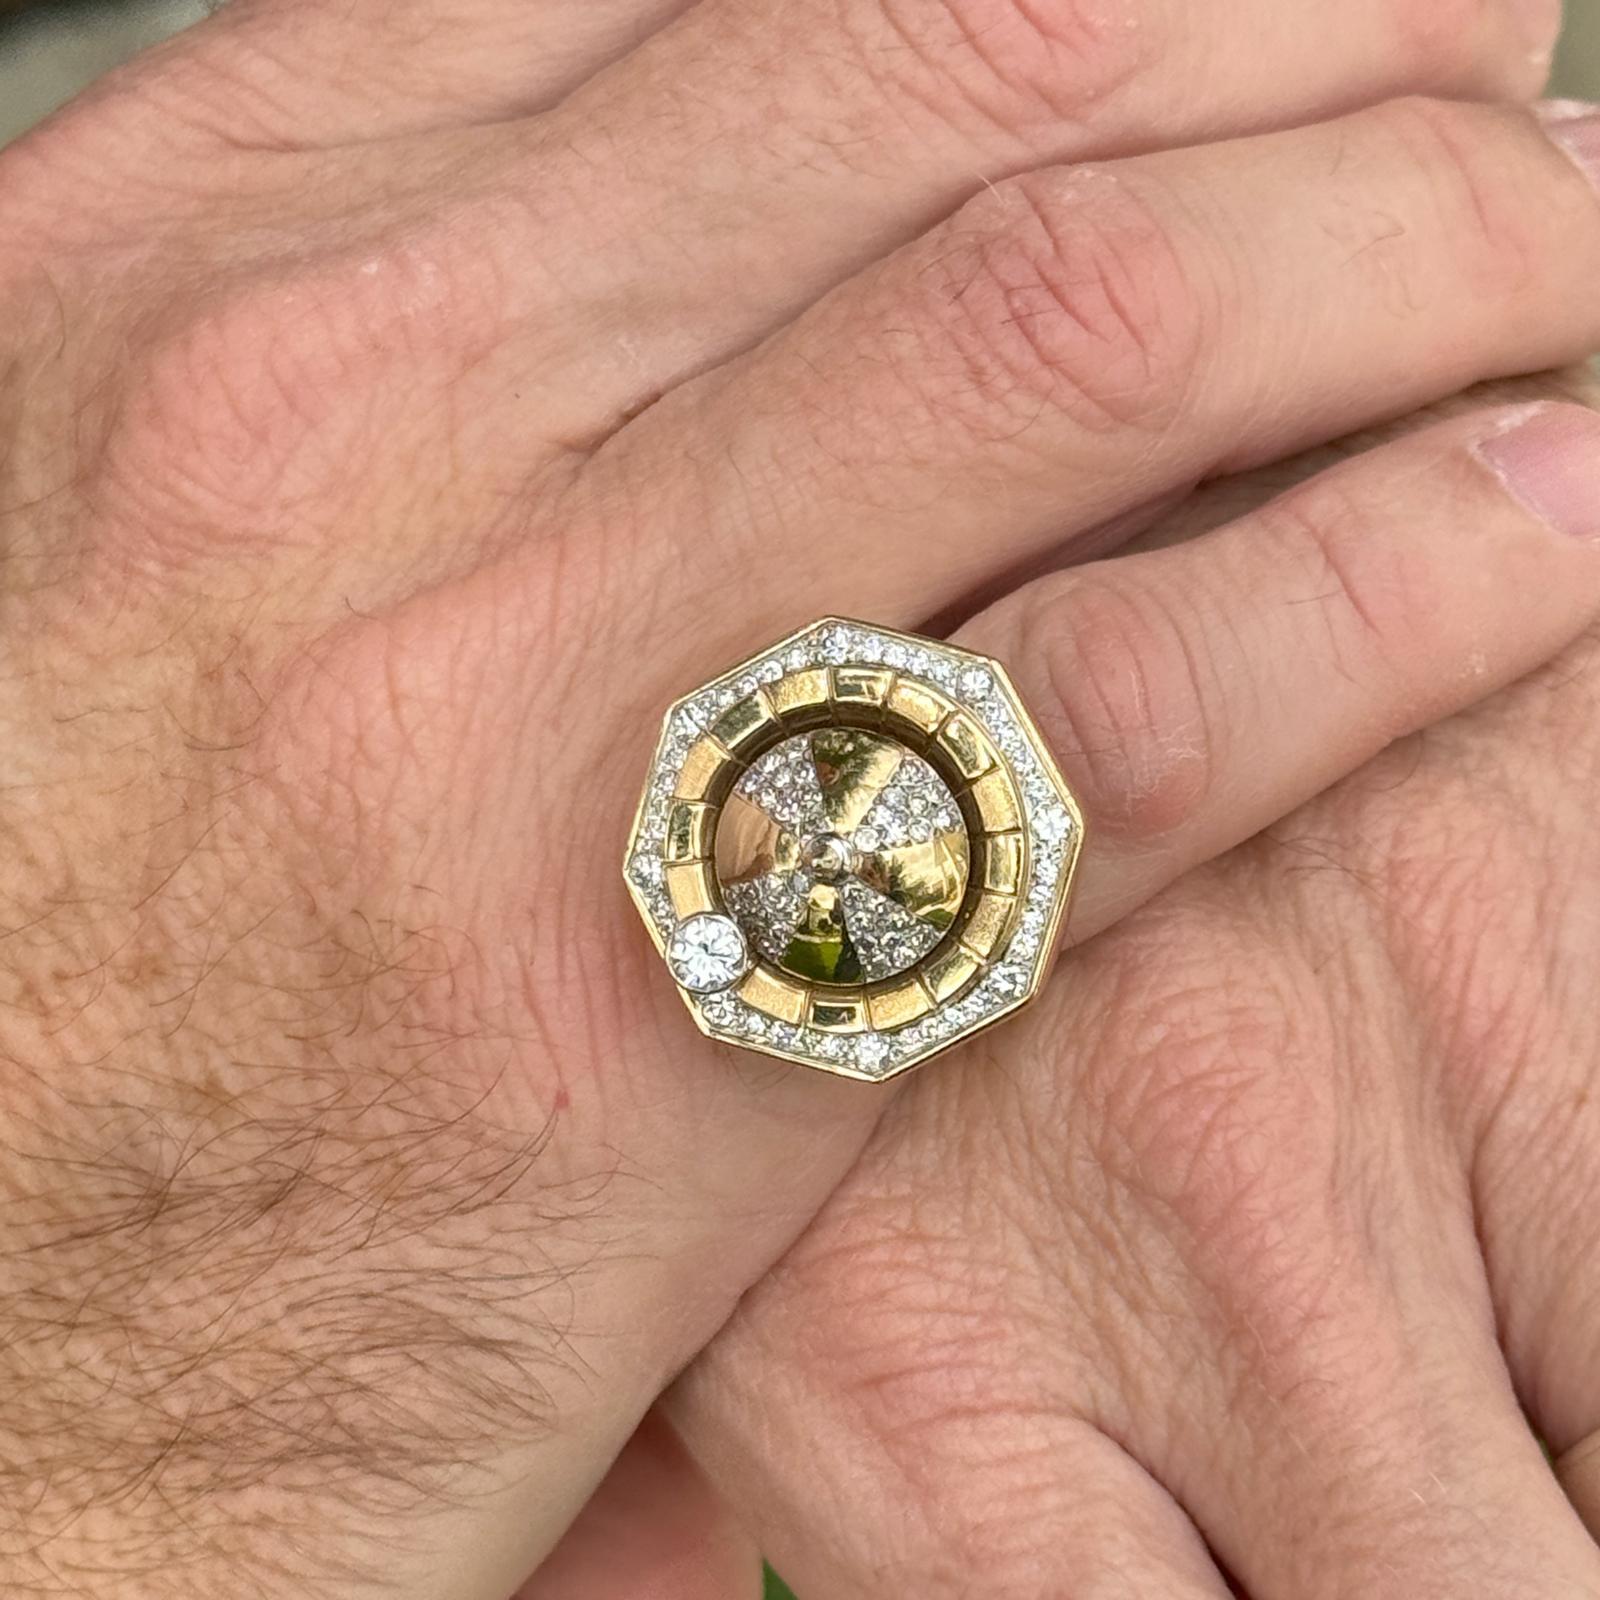 Diamantener Rouletterad-Drehring für Herren, handgefertigt in 18 Karat Gelbgold. Der Ring enthält 51 runde Diamanten im Brillantschliff mit einem Gesamtgewicht von ca. 0,79 Karat, Farbe G-H und Reinheit VS2-SI1. Der Ring misst oben 25 x 25 mm und